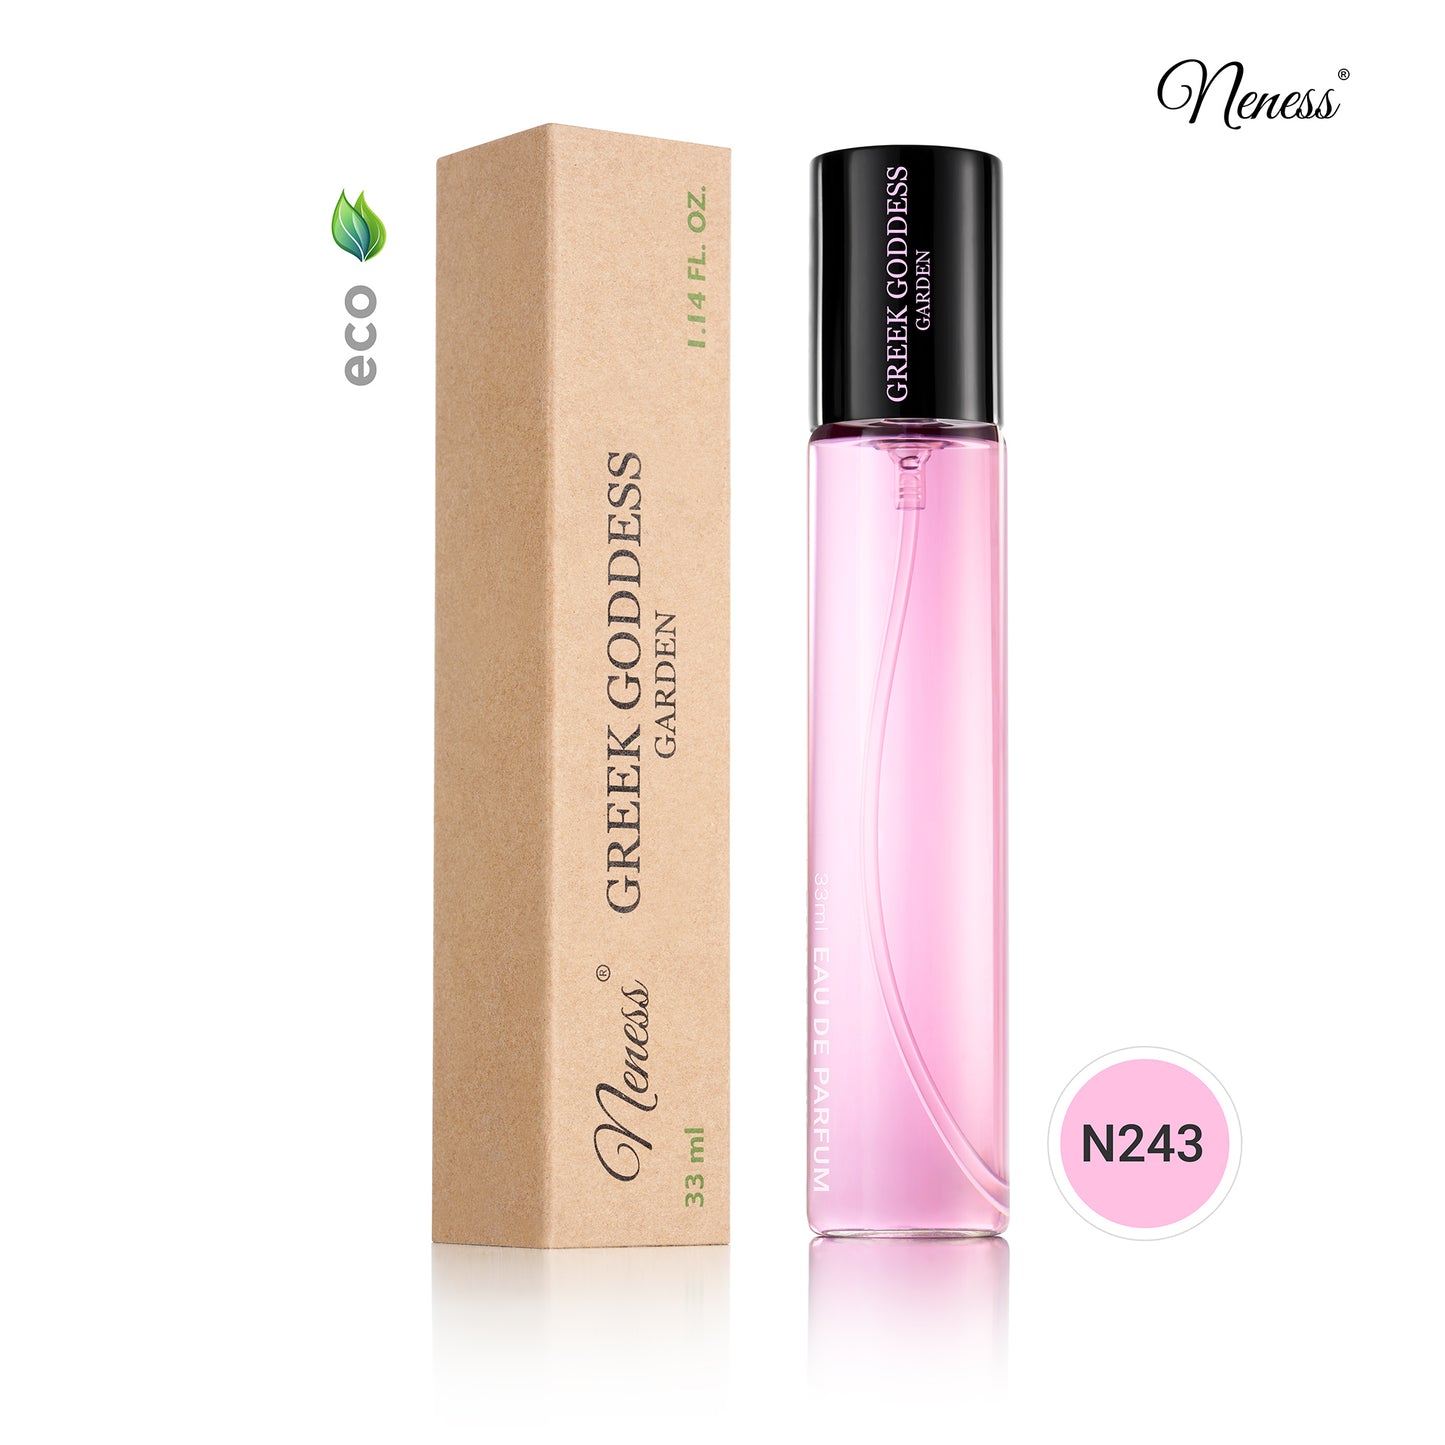 N243. Neness Greek Goddess Garden - 33 ml - Perfume For Women